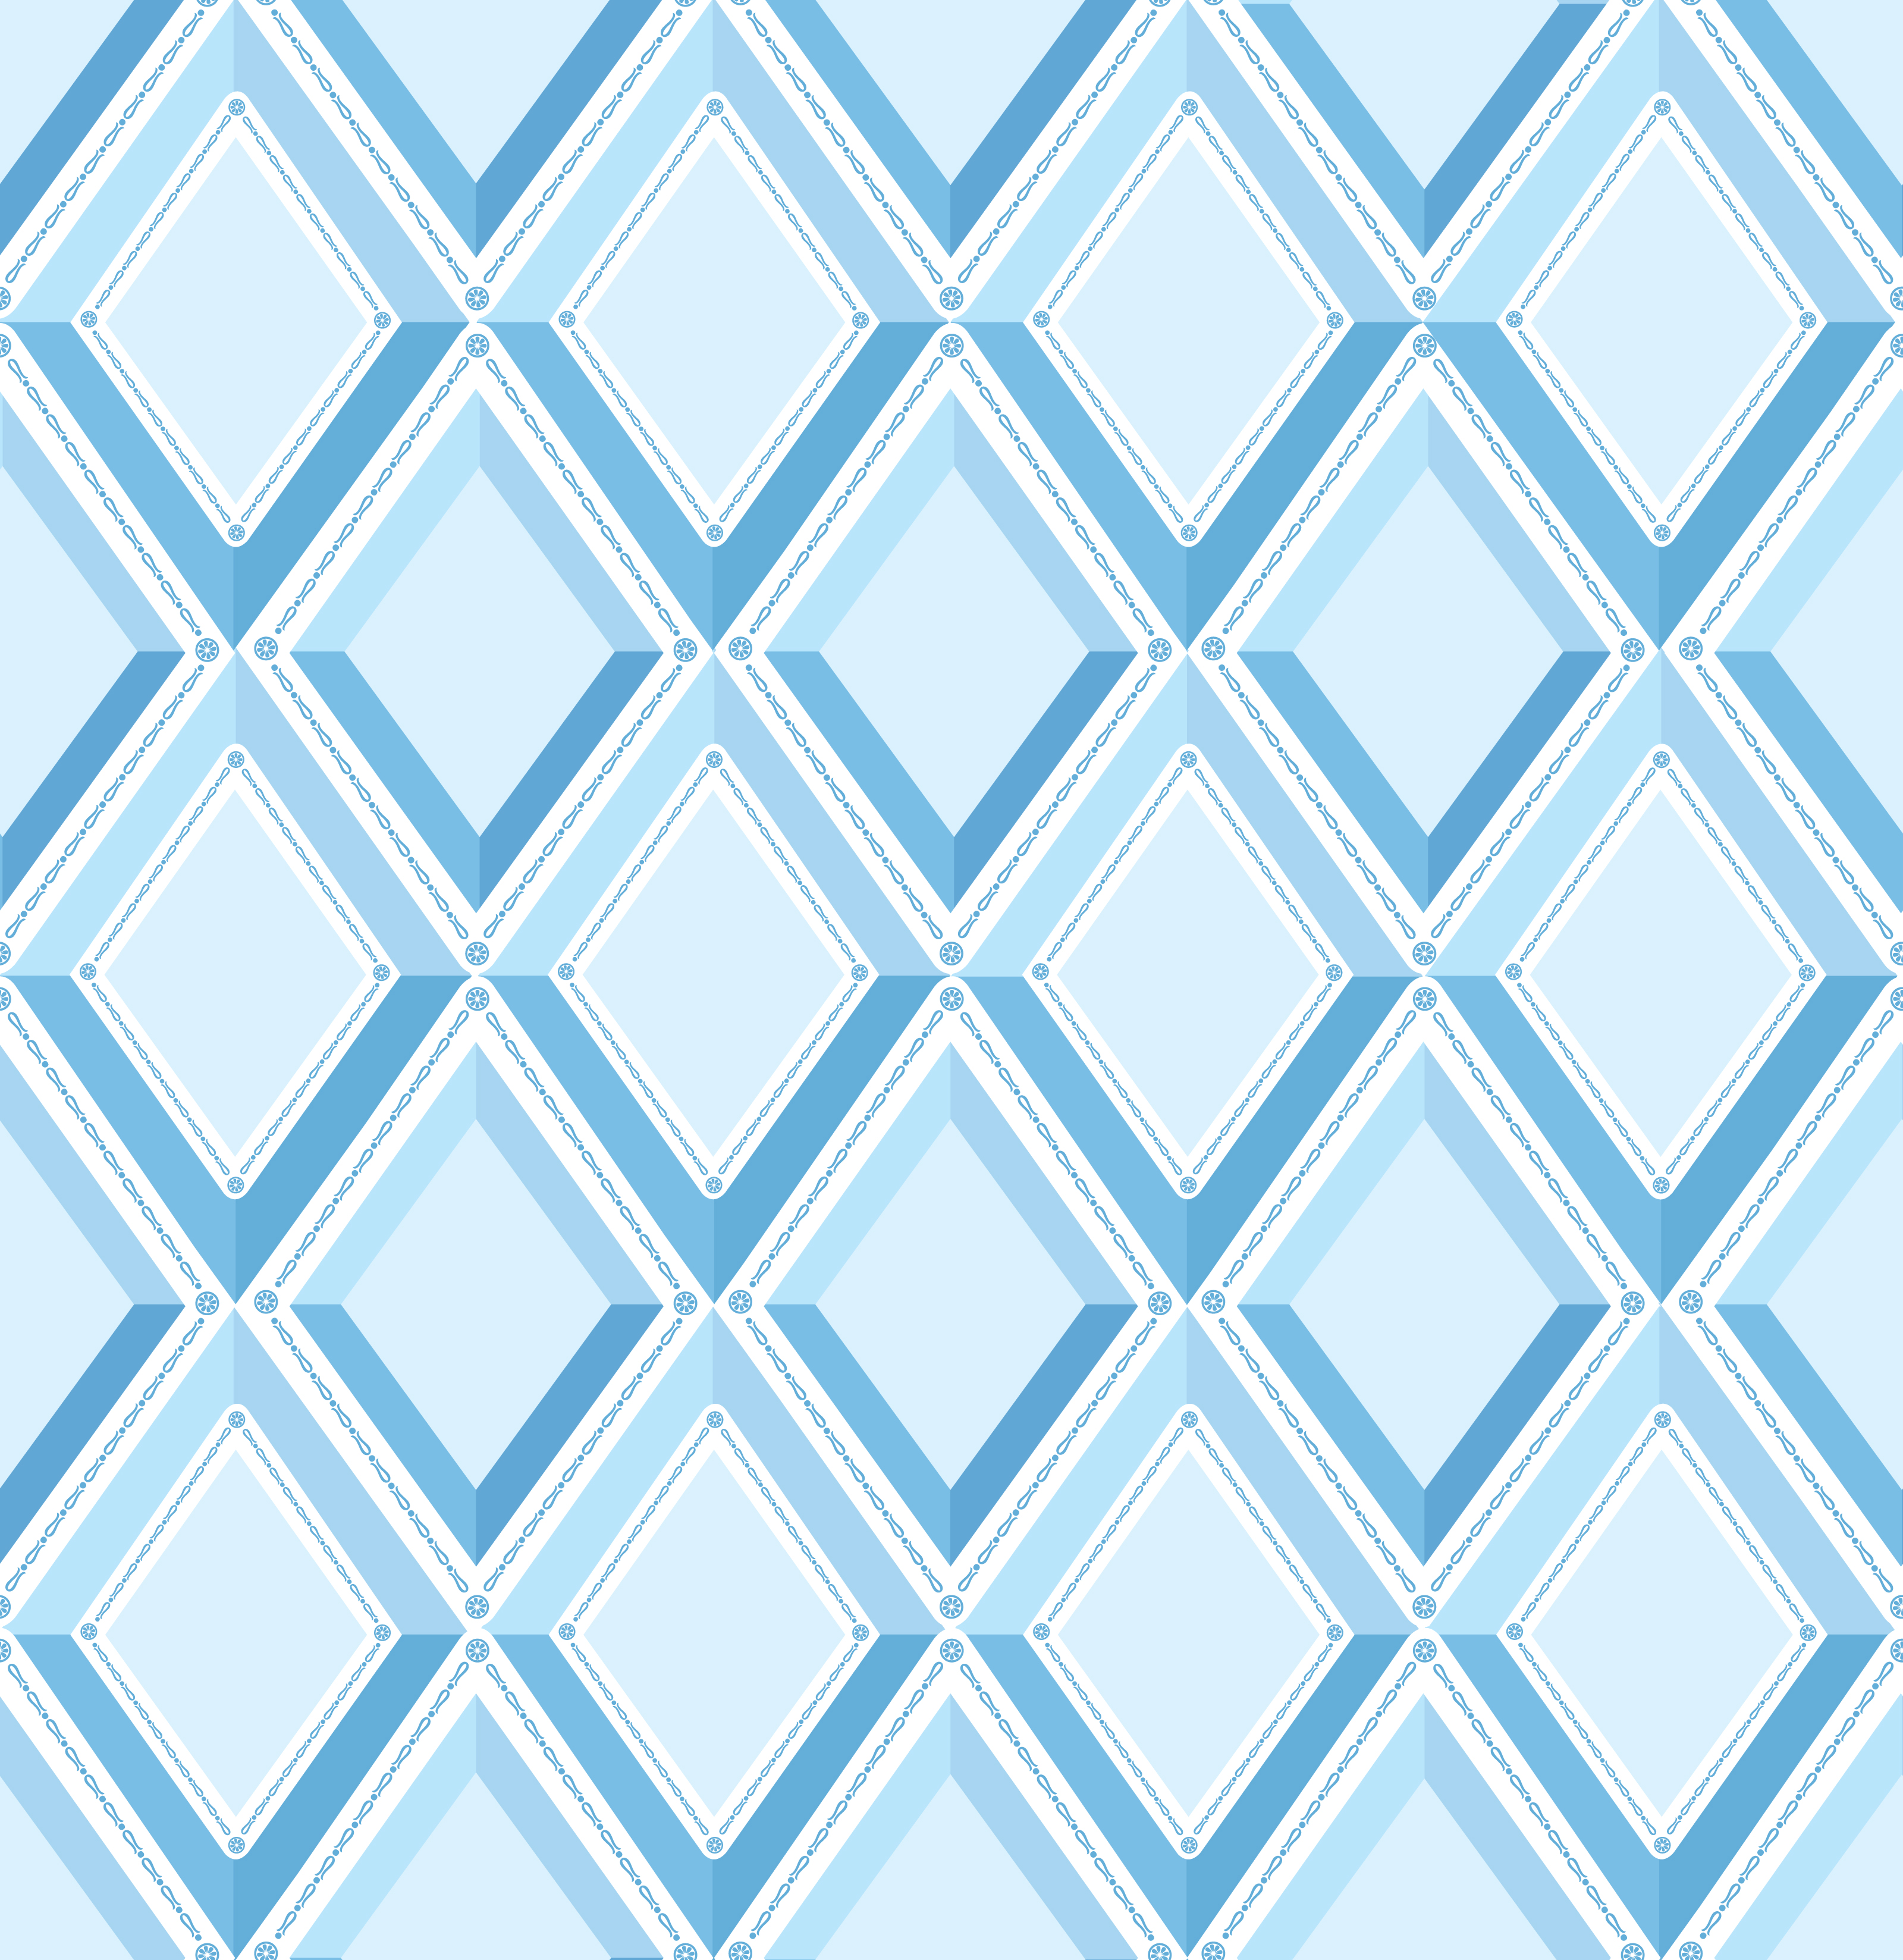 Diamond seamless pattern. geometric diagonal backdrop